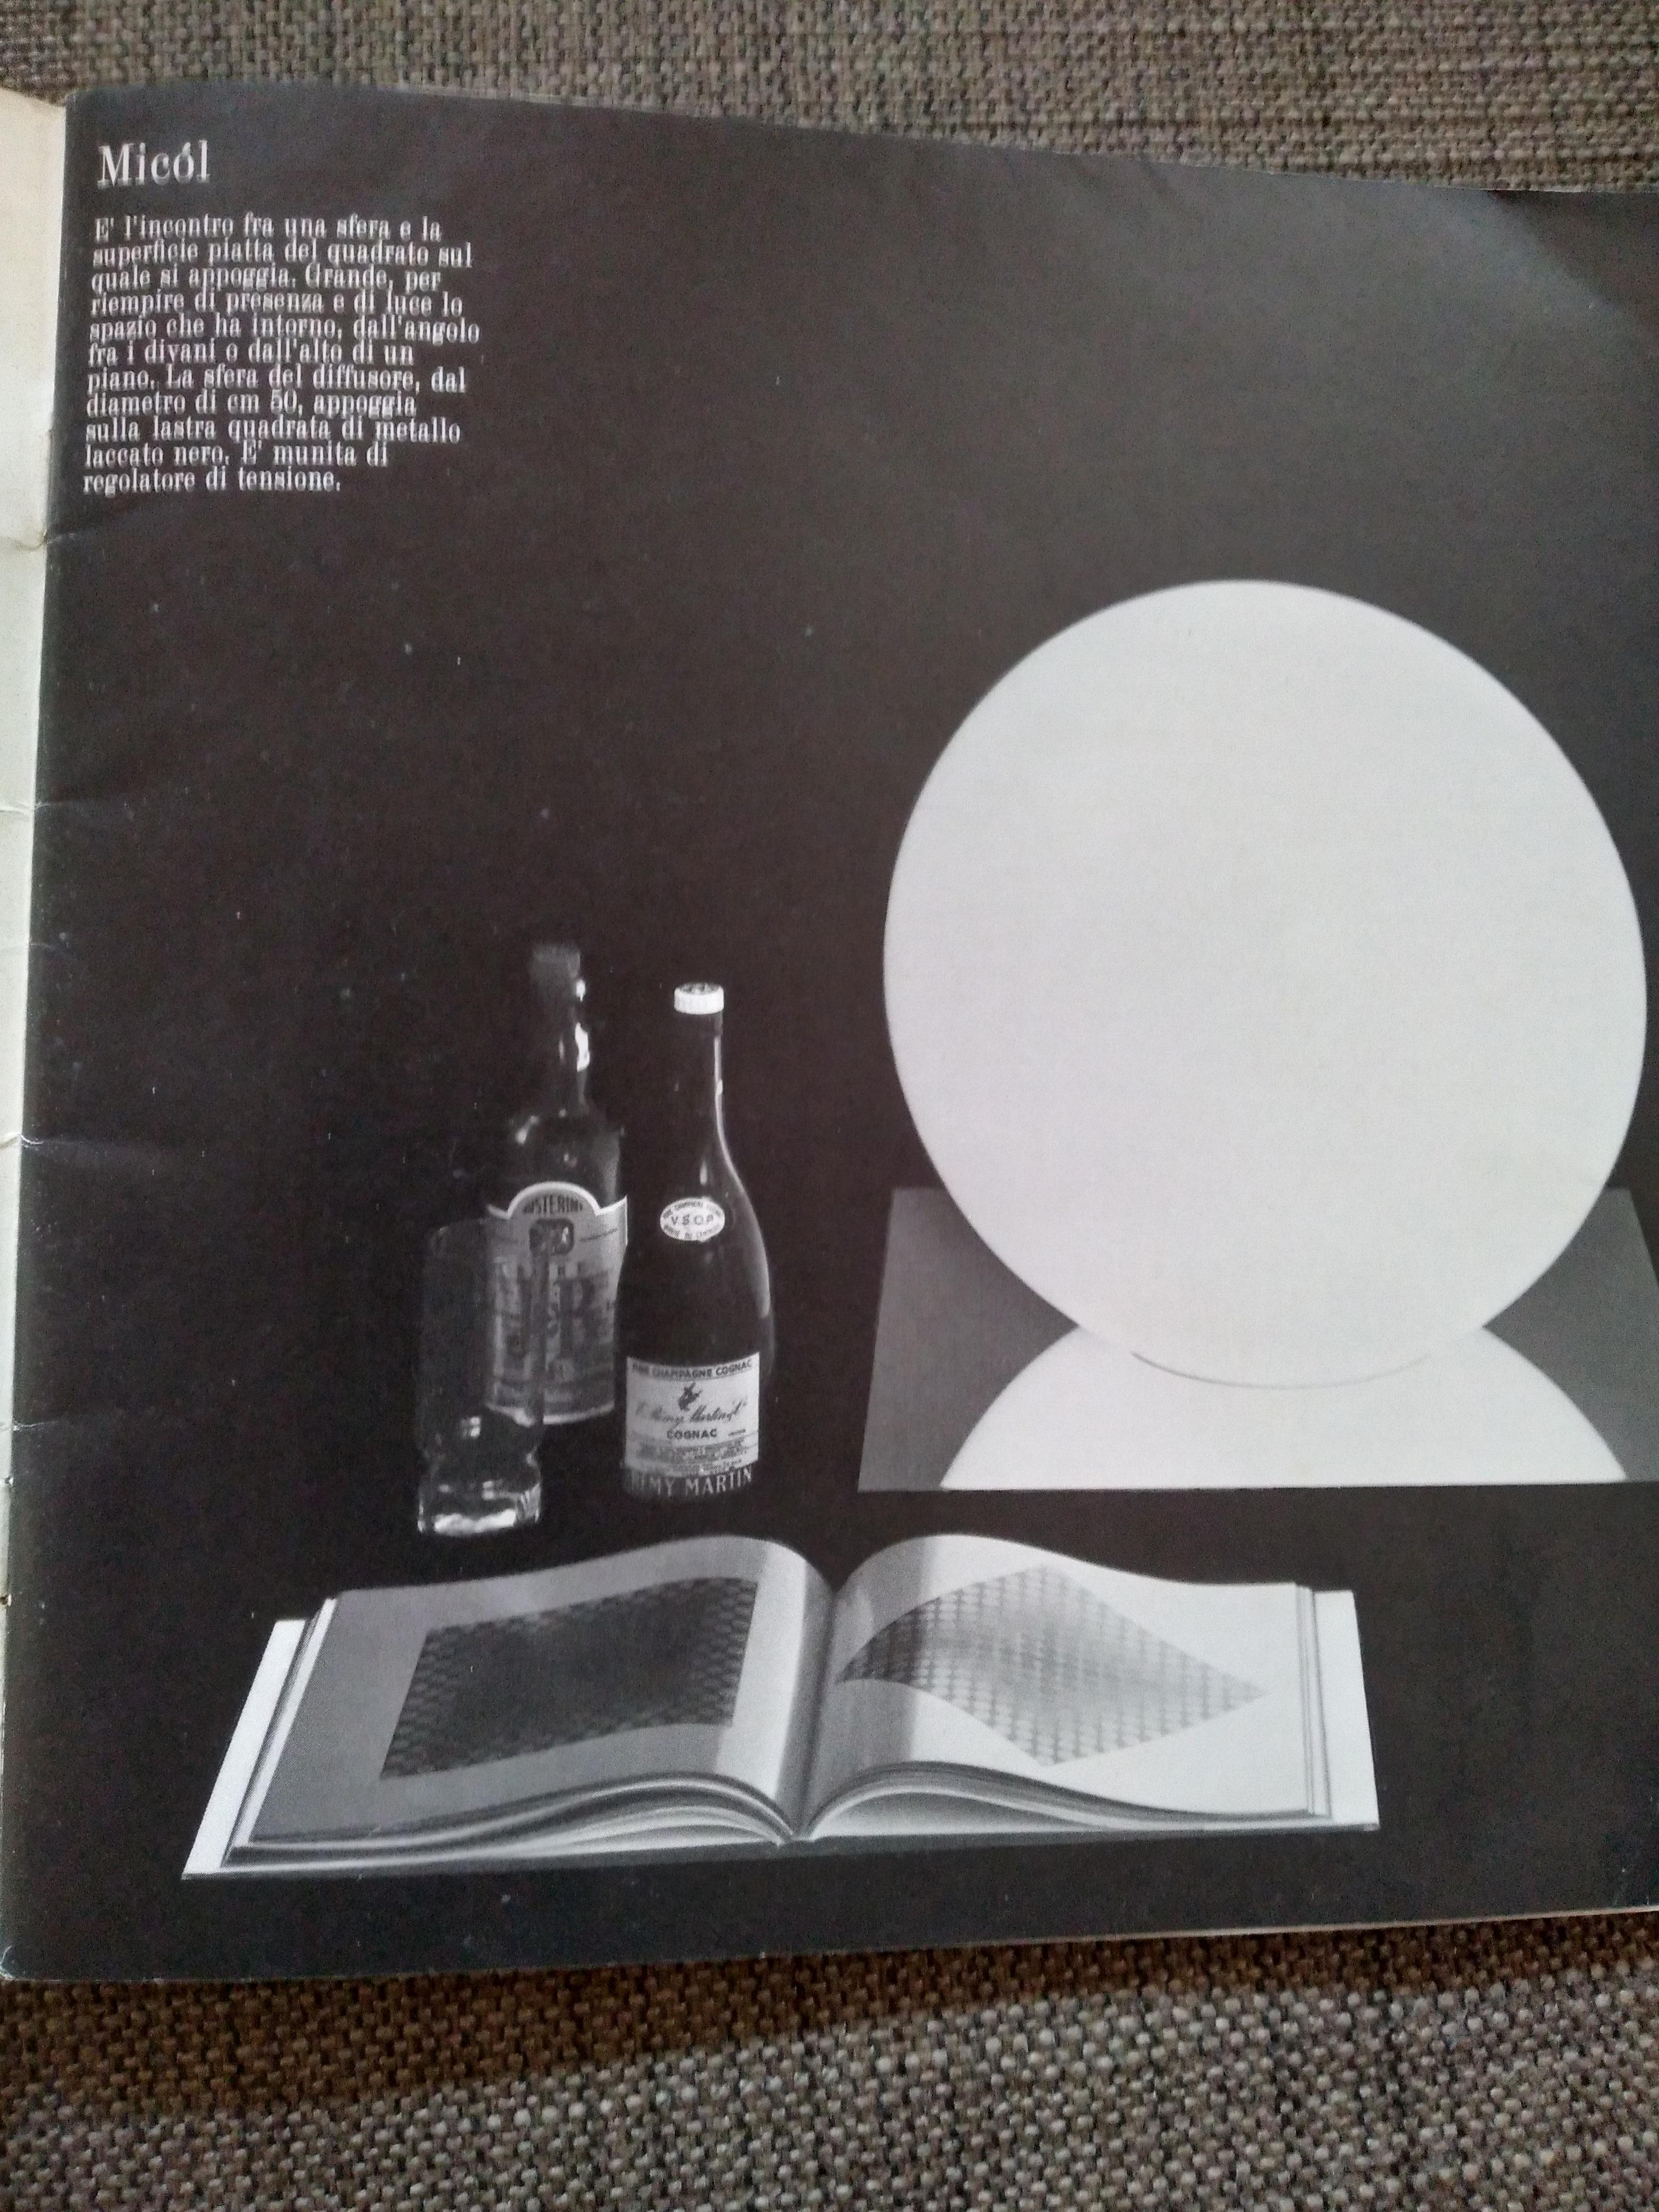 Micol Table Lamp By Sergio Mazza & Giuliana Gramigna from Quattrifolio 1970s For Sale 7